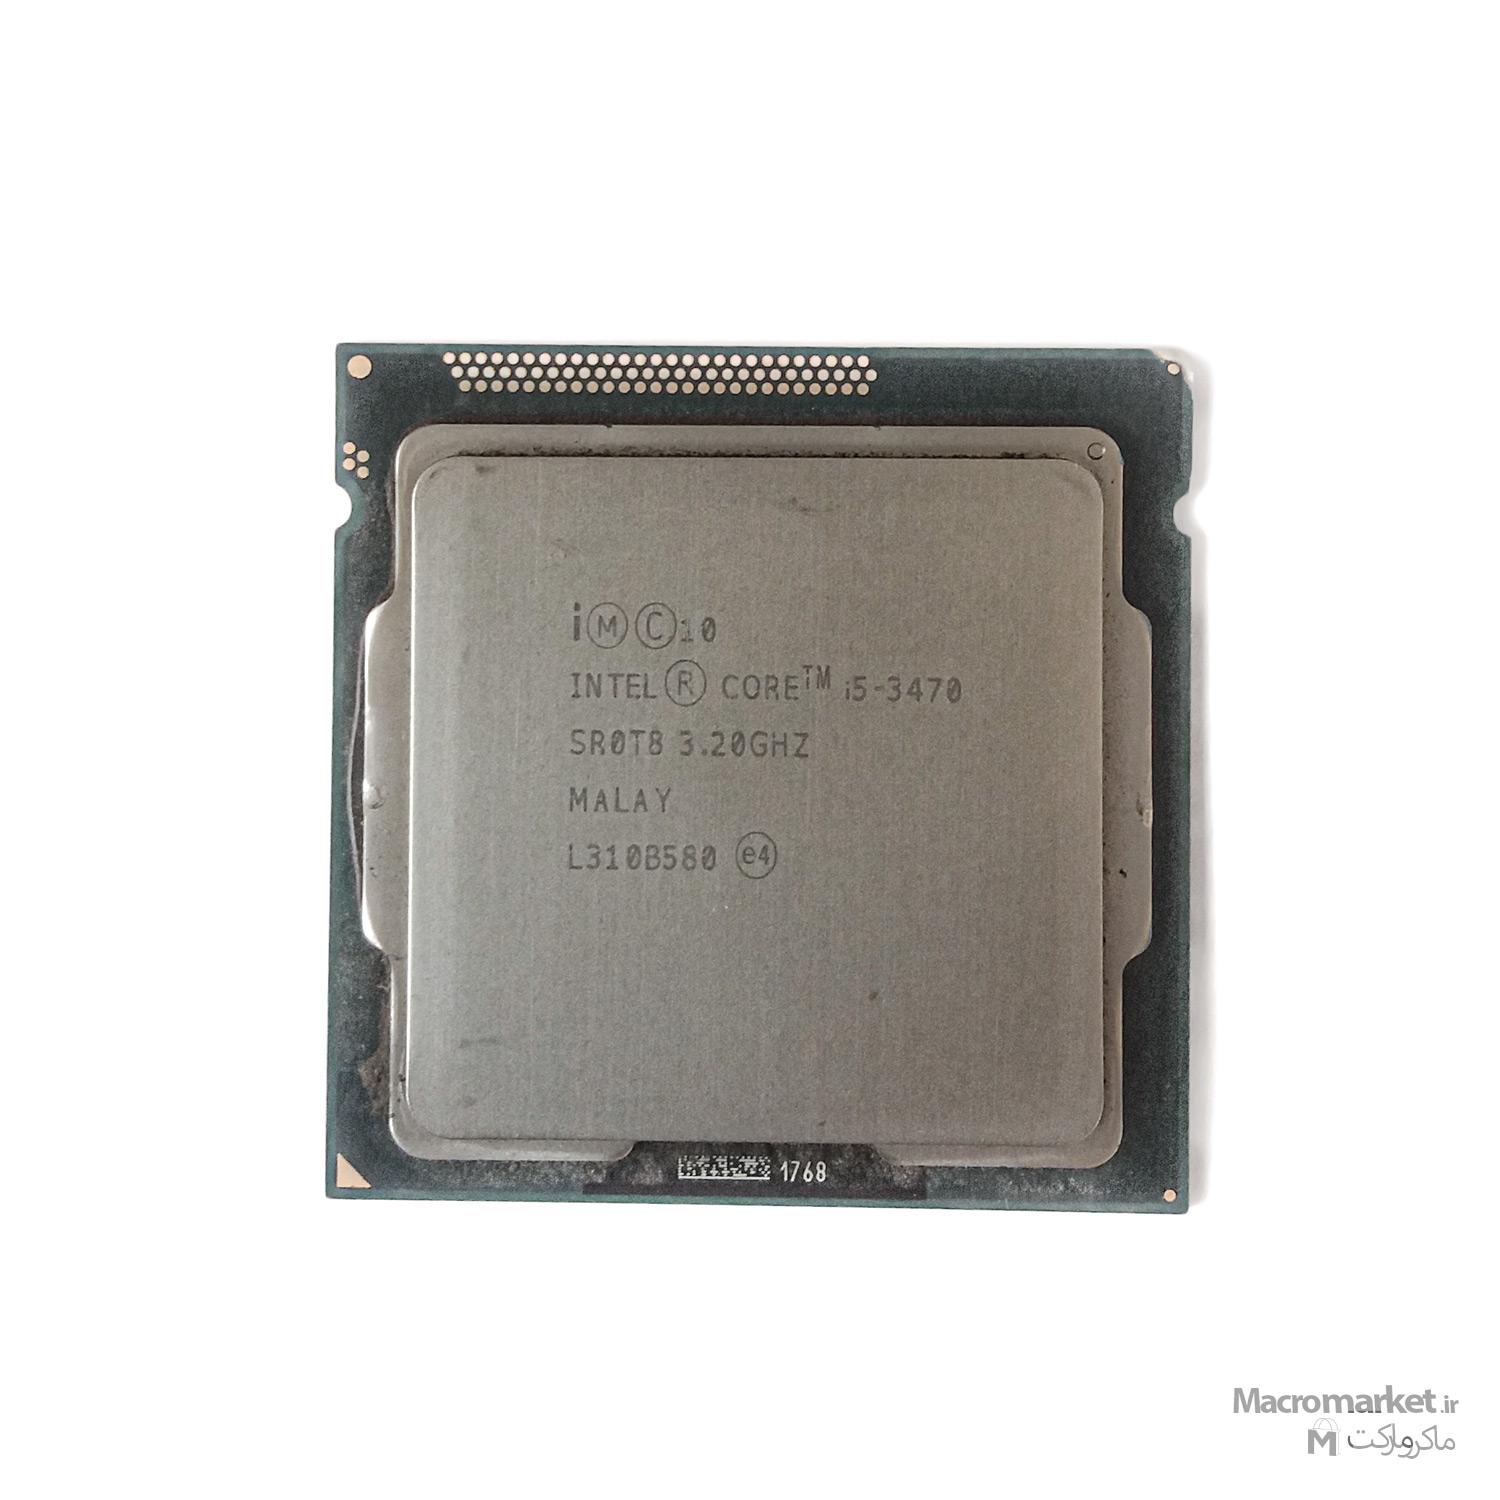 پردازنده CPU Intel i5 3470 3.20GHz استوک در حد نو - برند اینتل ، سوکت 1155 ، 4 هسته ای ، 6 مگابایت کش ، 22 نانومتری